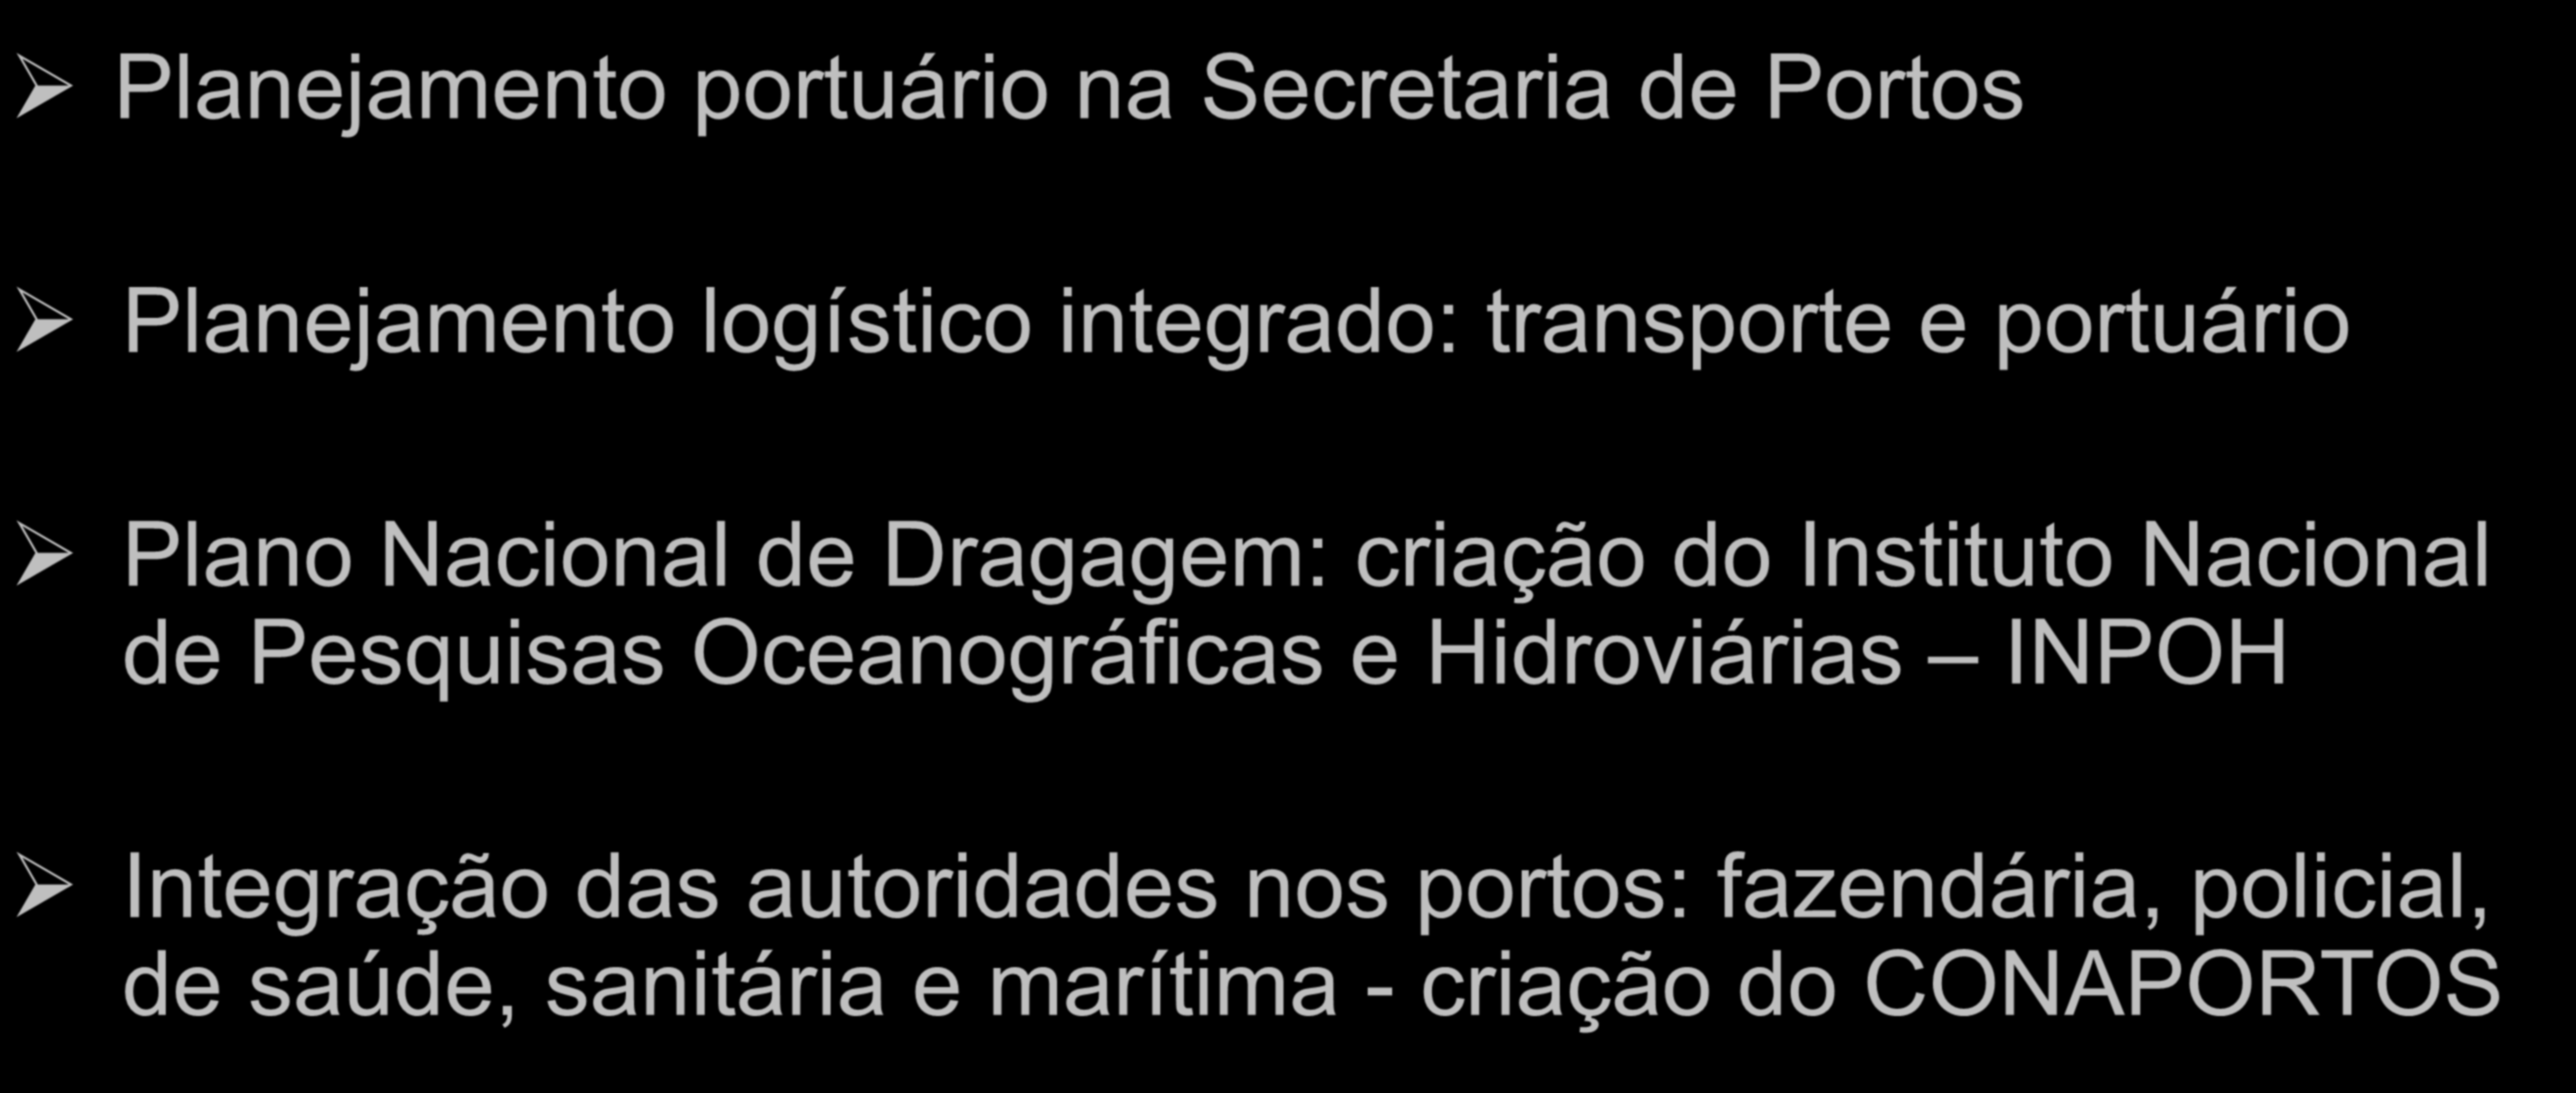 Programa de Investimentos em Portos Retomada do planejamento e melhoria da operação no setor portuário: Planejamento portuário na Secretaria de Portos Planejamento logístico integrado: transporte e